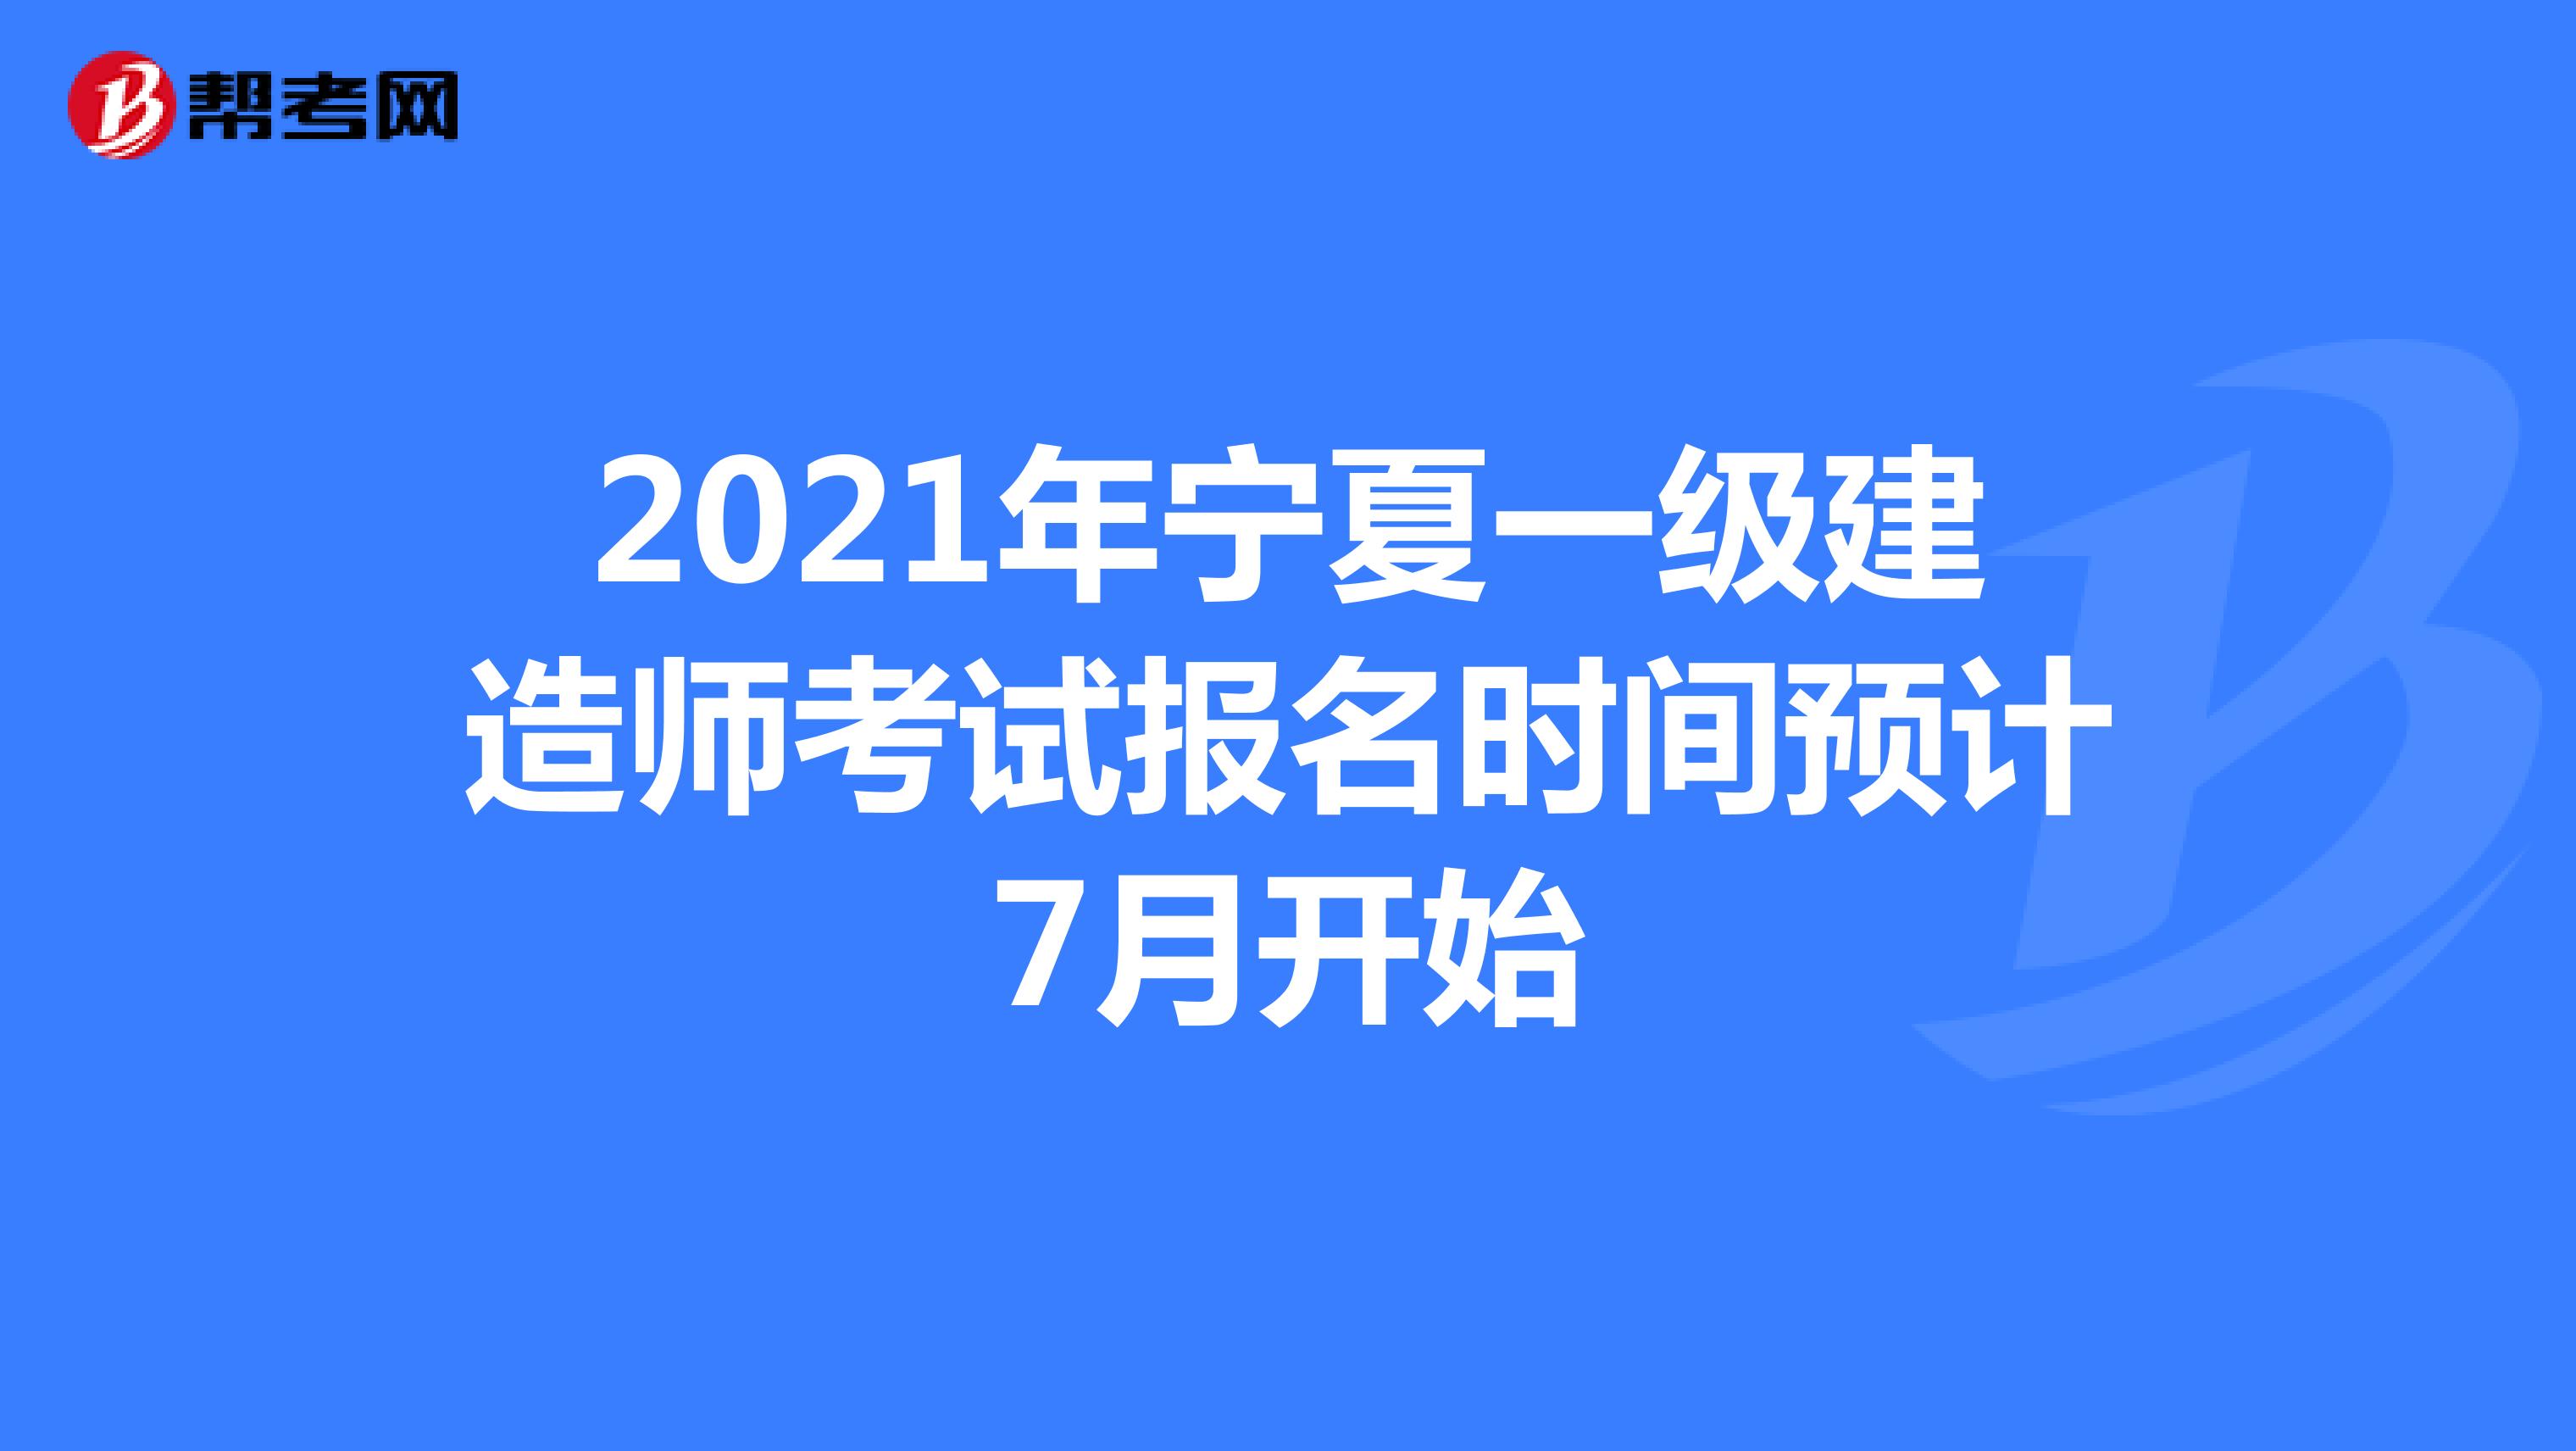 2021年宁夏一级建造师考试报名时间预计7月开始